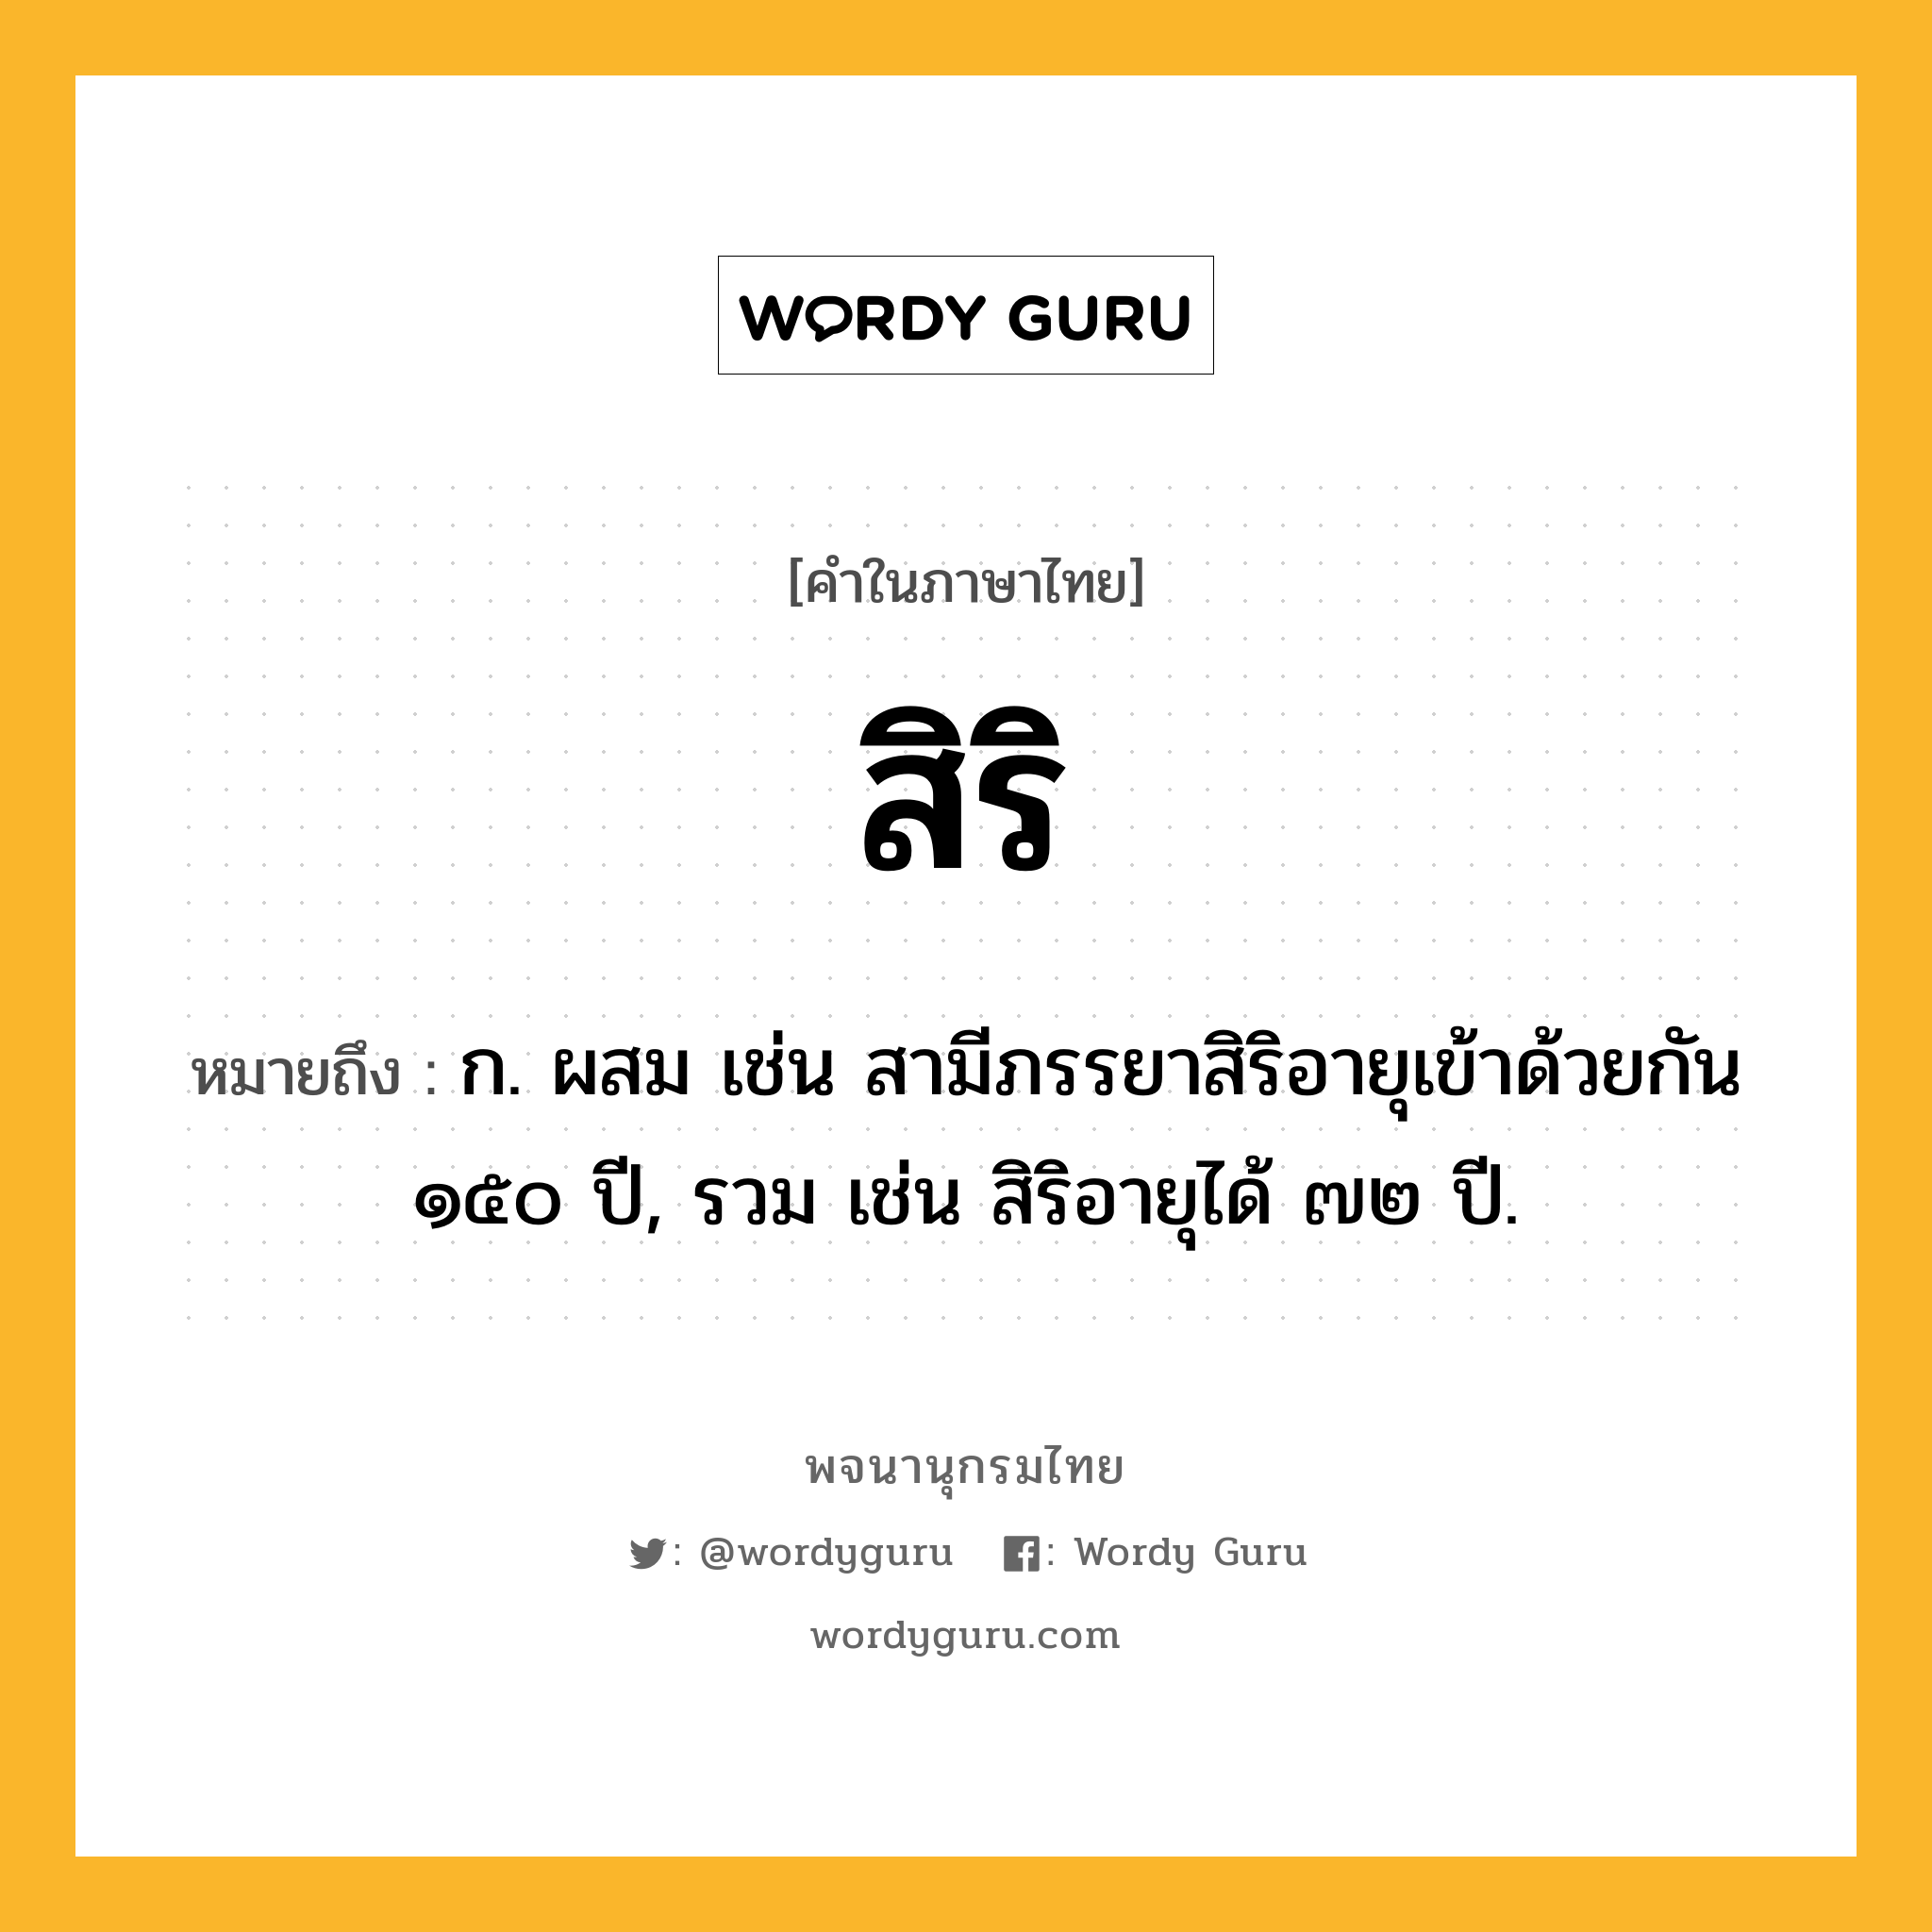 สิริ ความหมาย หมายถึงอะไร?, คำในภาษาไทย สิริ หมายถึง ก. ผสม เช่น สามีภรรยาสิริอายุเข้าด้วยกัน ๑๕๐ ปี, รวม เช่น สิริอายุได้ ๗๒ ปี.